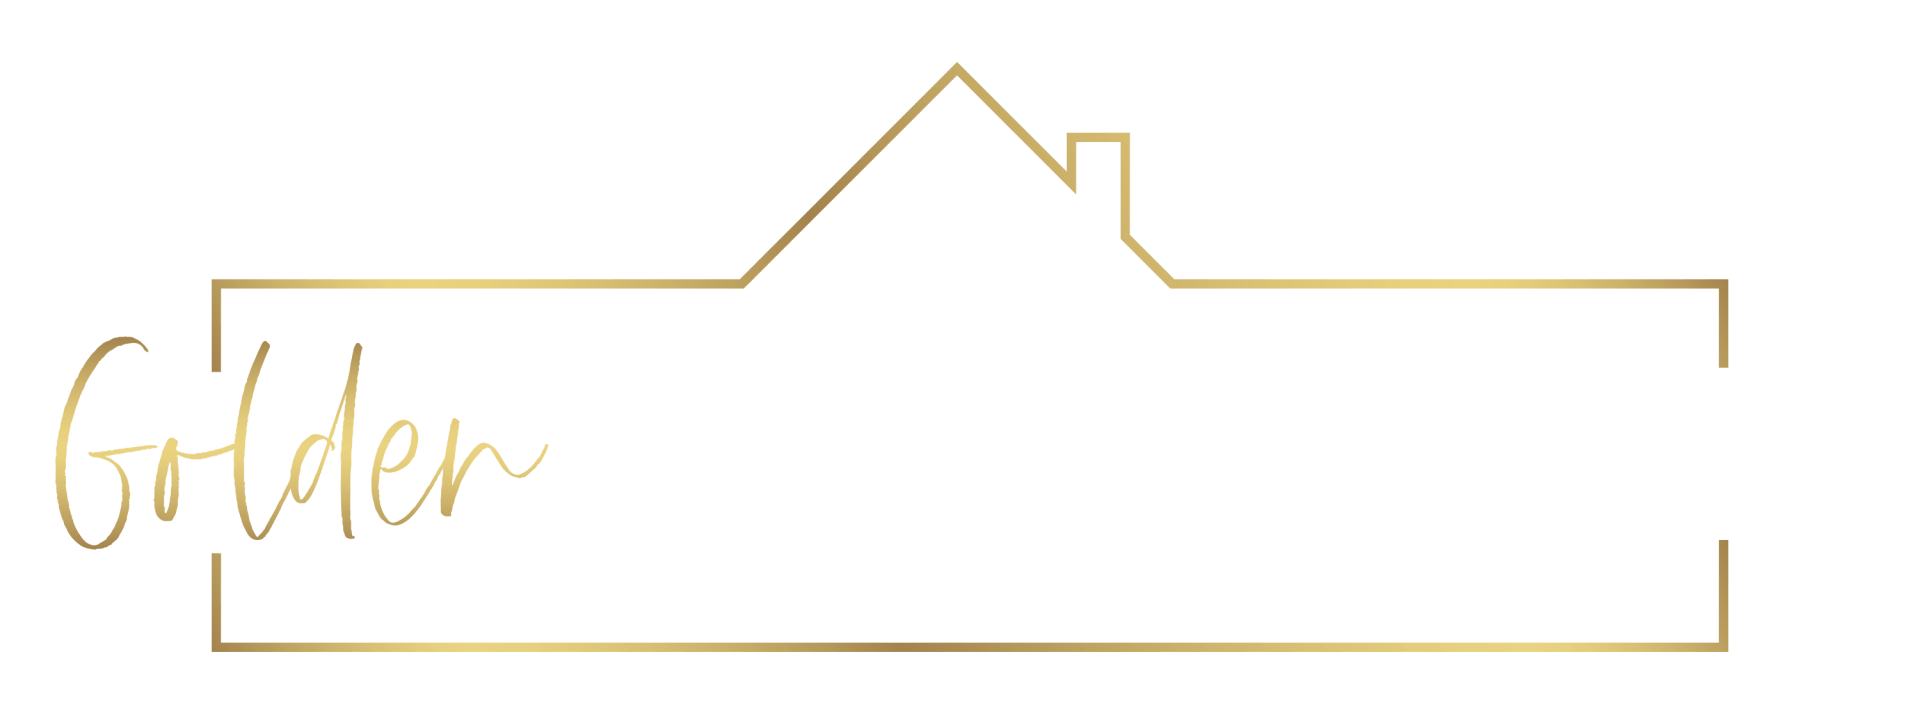 Golden Home Inspection - Logo